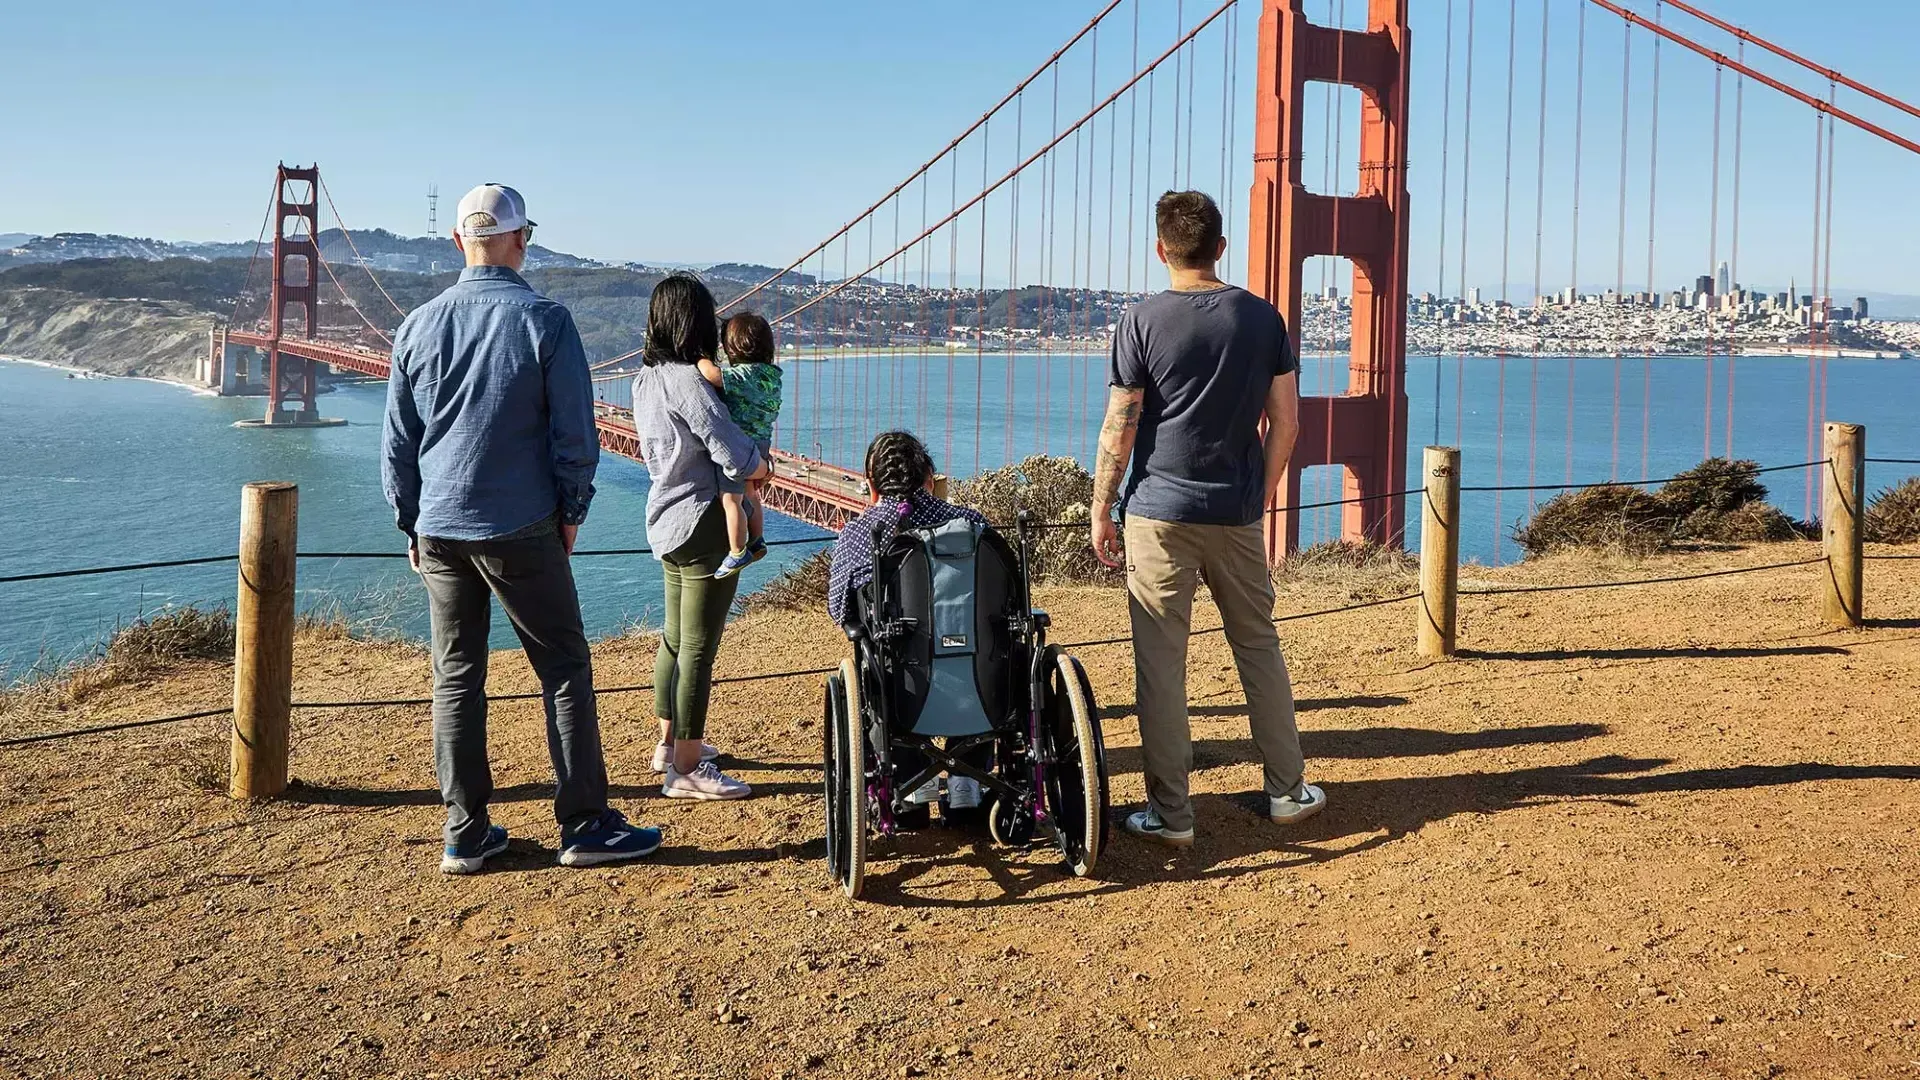 Eine Gruppe von Menschen, 包括一个坐轮椅的人, ist von hinten zu sehen, während sie von den Marin Headlands aus auf die Golden Gate Bridge blicken.